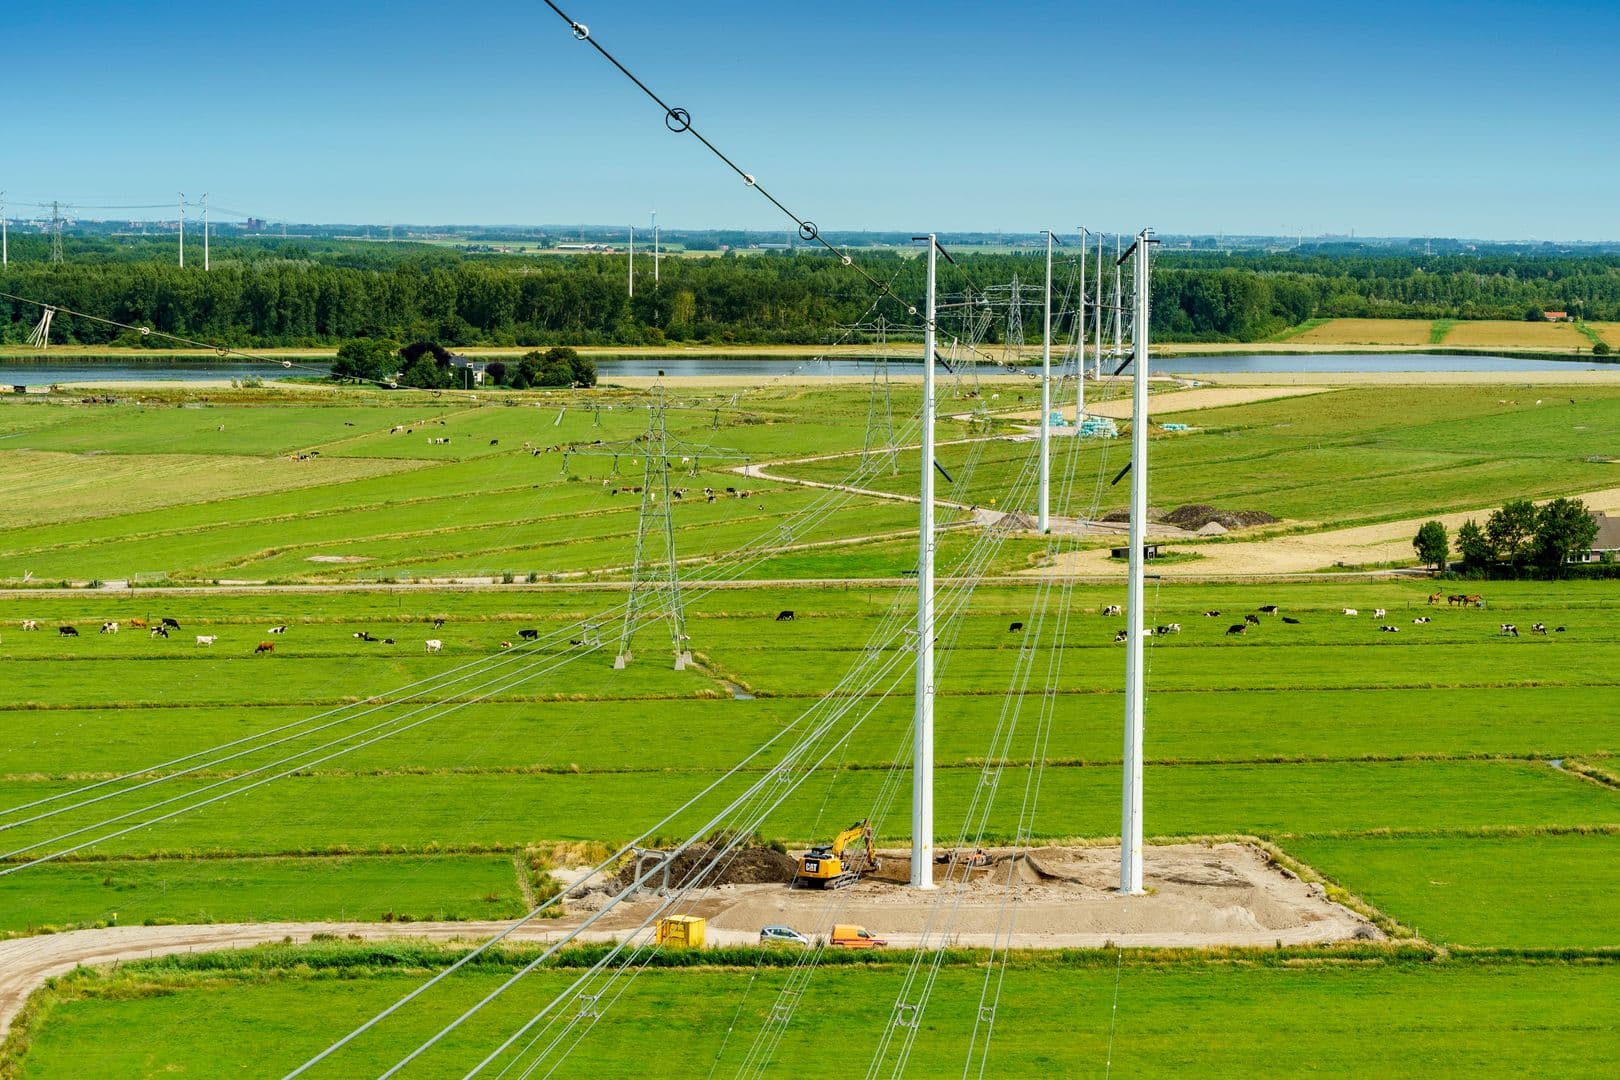 Ben Voorhorst benoemd tot speciaal coördinator aanpak vol elektriciteitsnet Noord-Brabant en Limburg